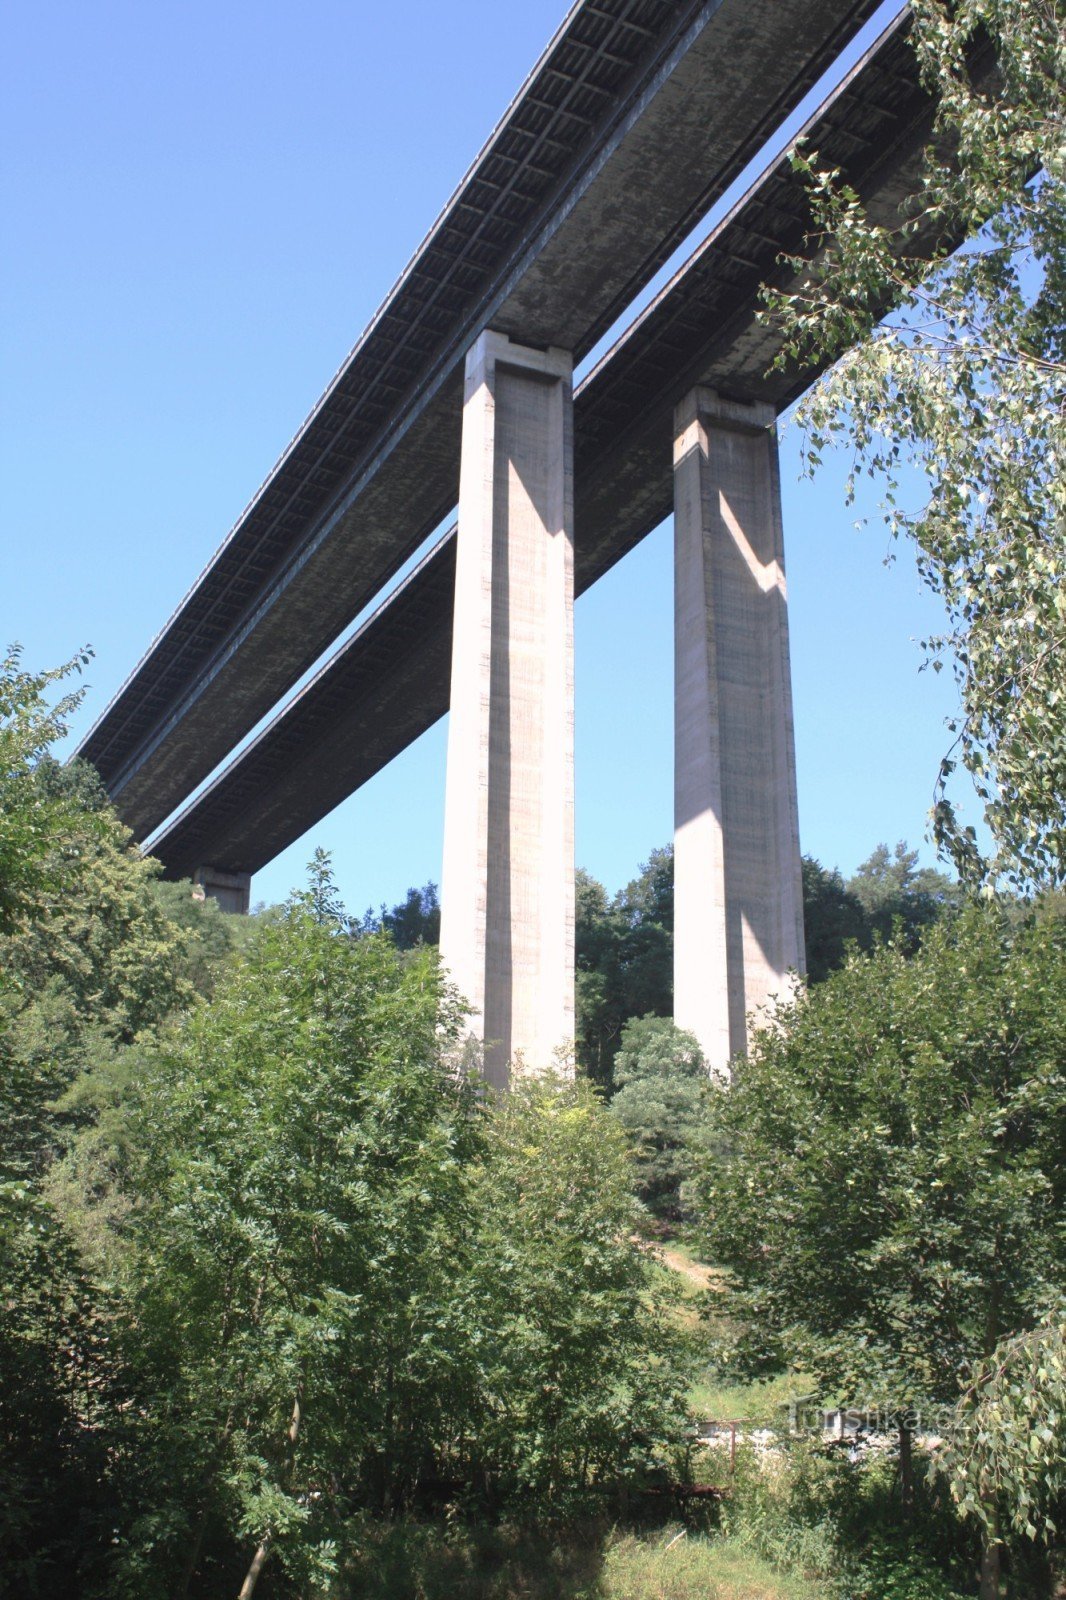 Velké Meziříčí - dálniční most Vysočina